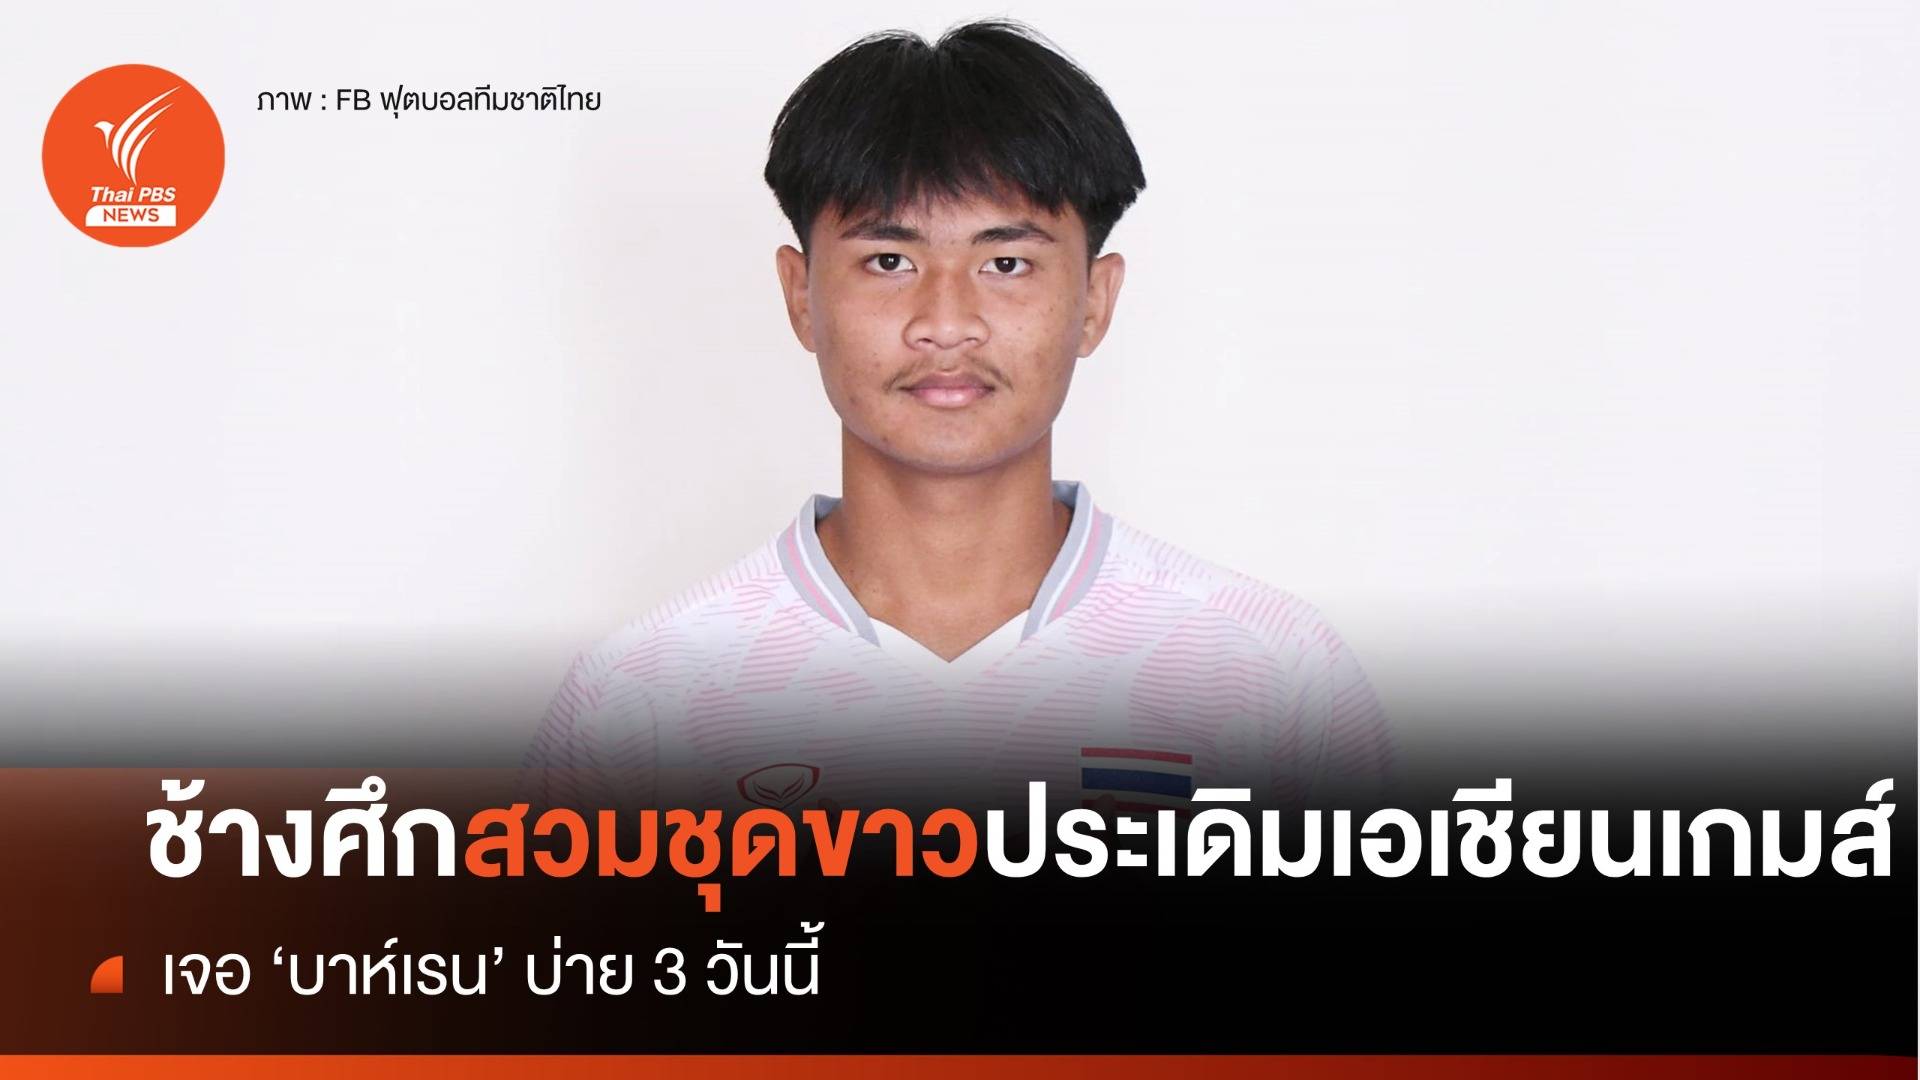 ทีมชาติไทย สวมชุดสีขาว ประเดิมศึก เอเชียน เกมส์ พบ "บาห์เรน" เย็นนี้ 